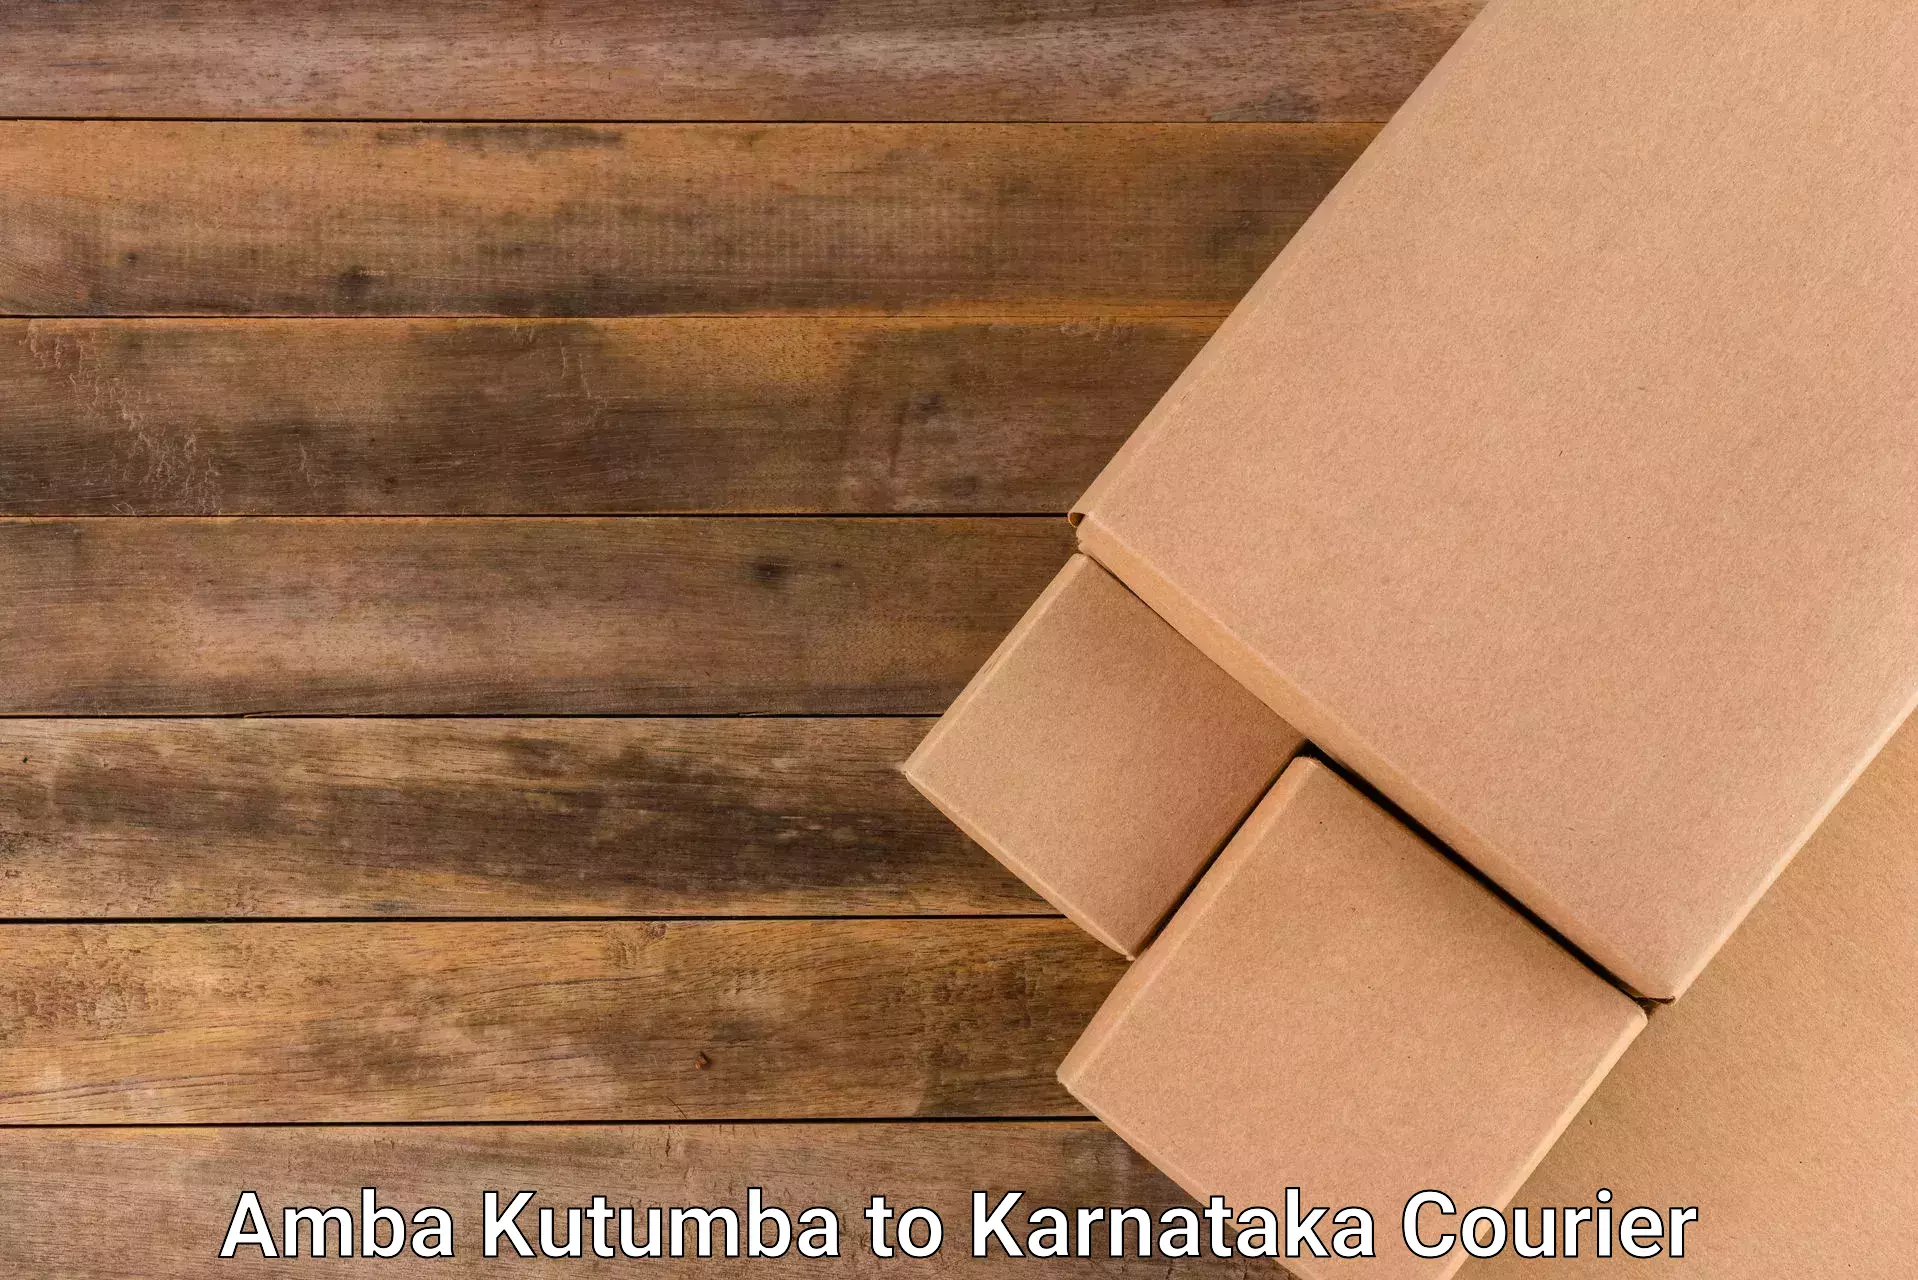 State-of-the-art courier technology Amba Kutumba to Hirekerur